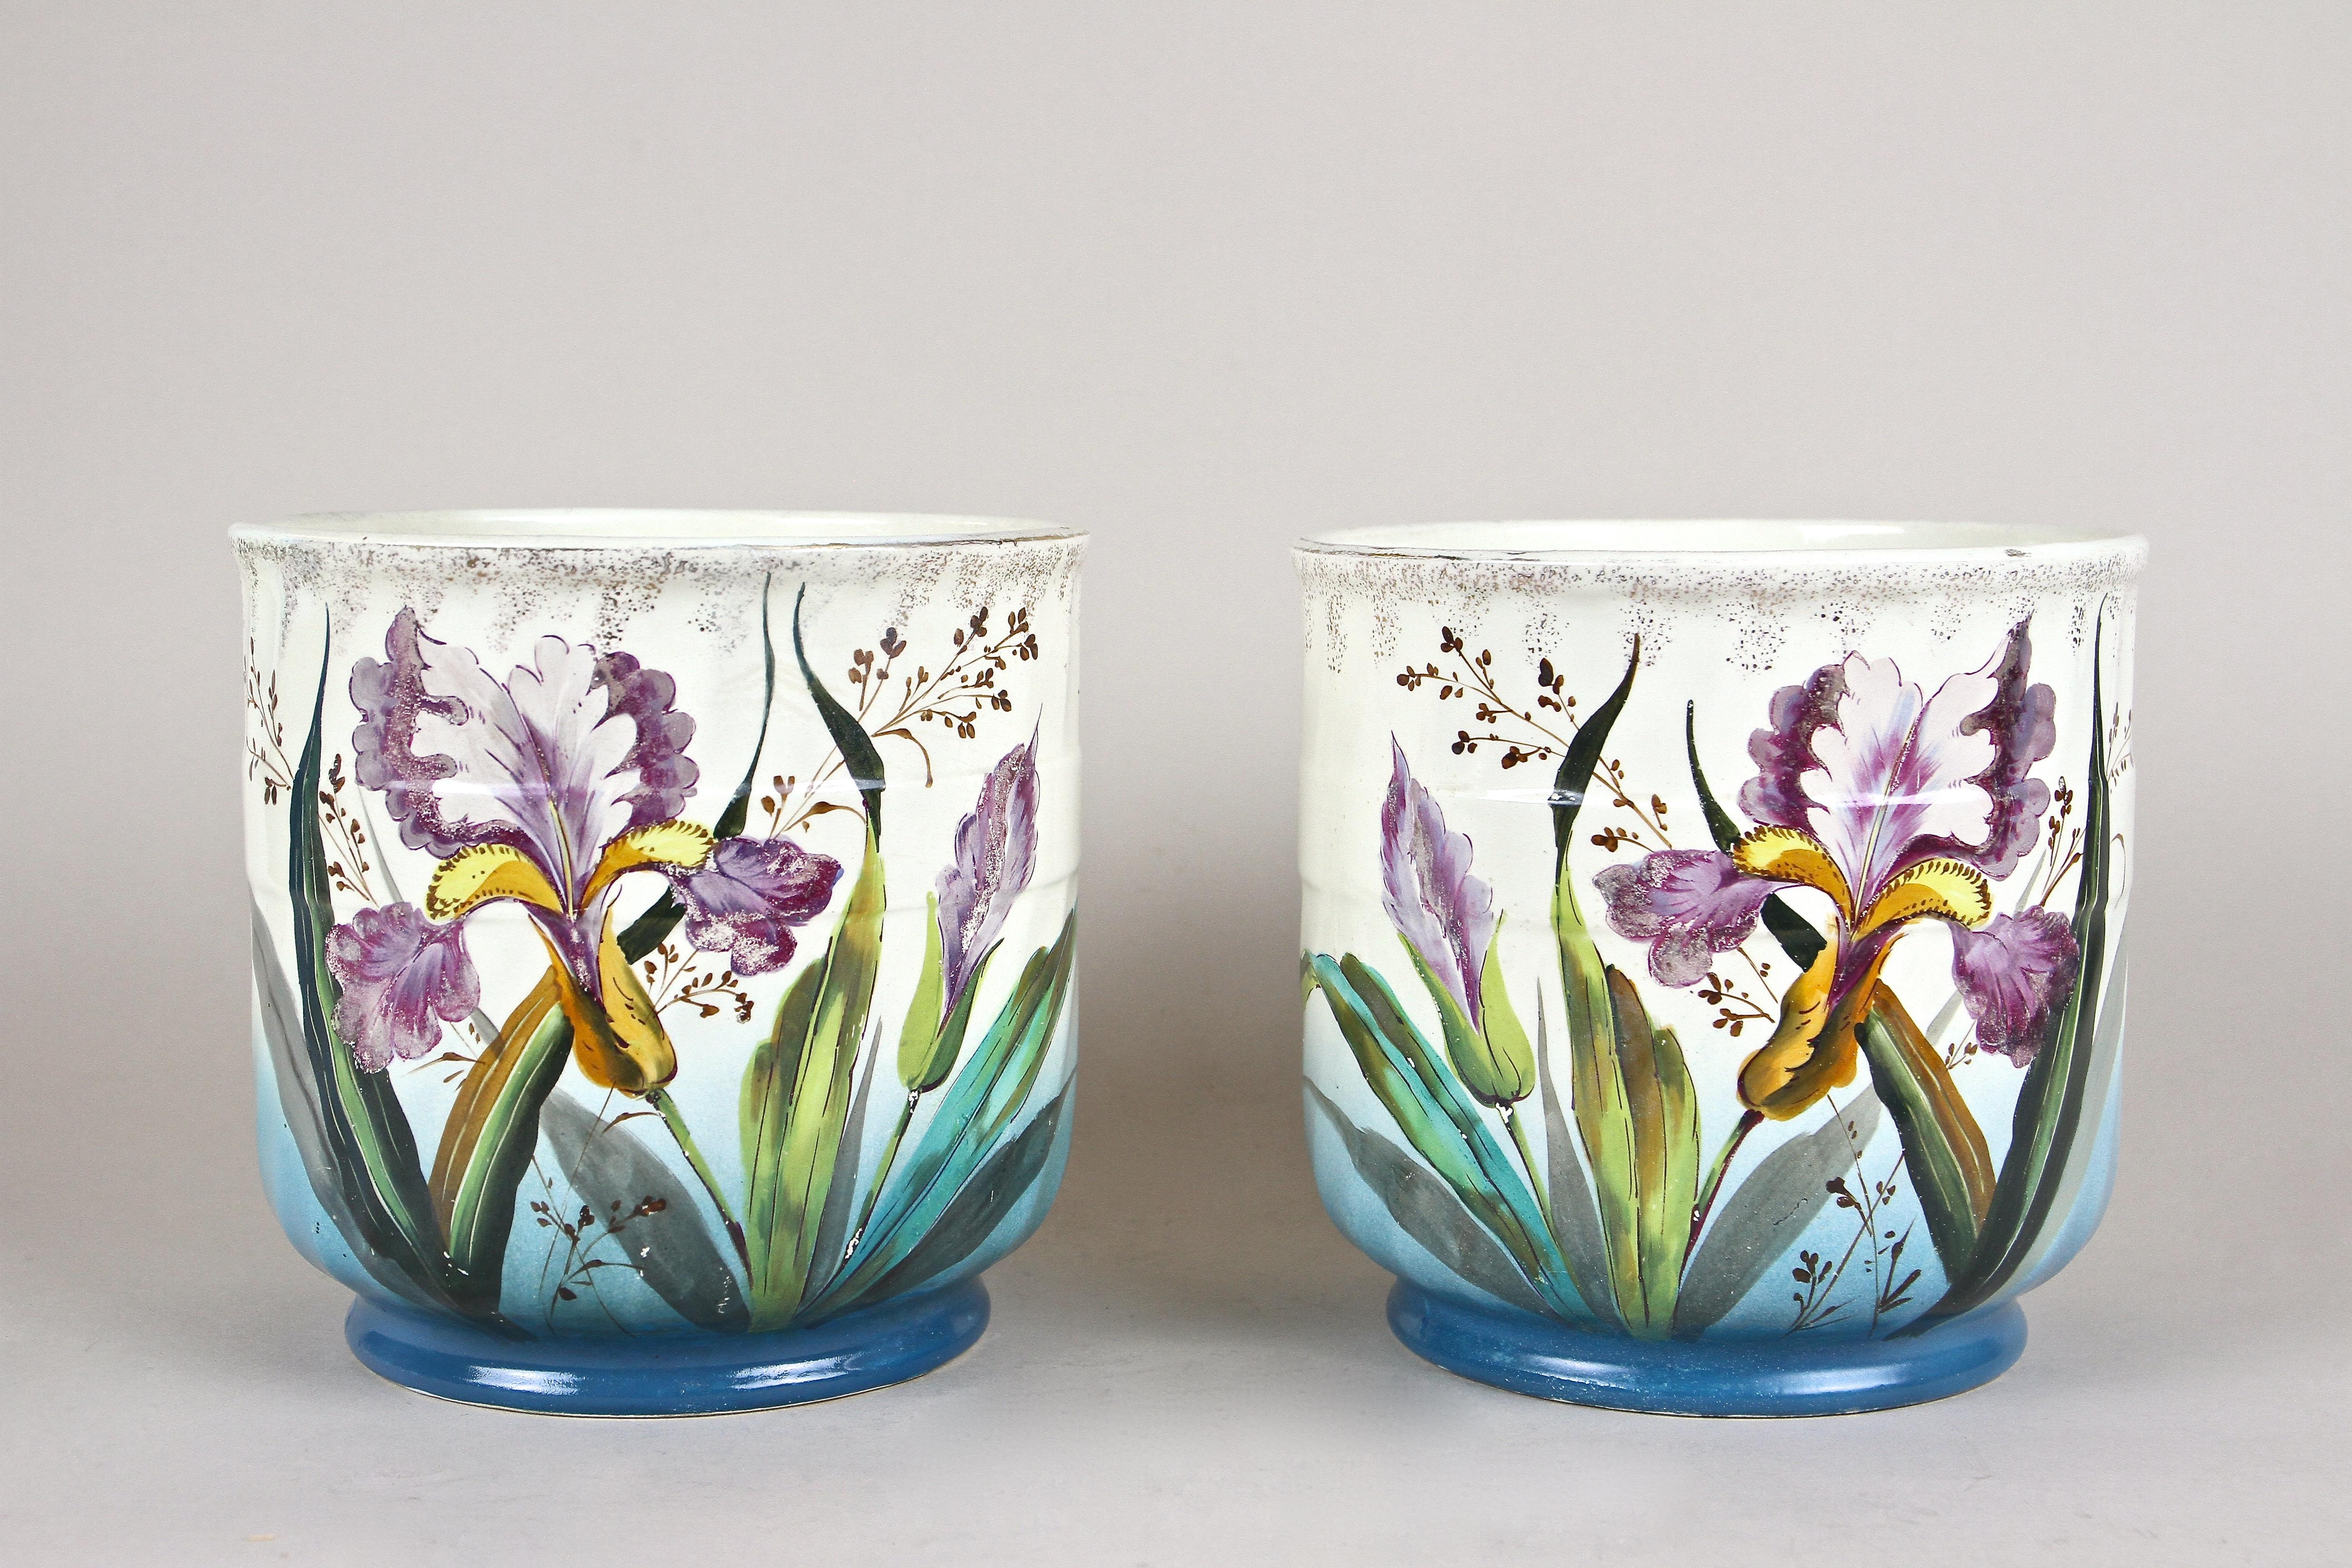 Wunderschön bemaltes Paar französischer Keramik-Übertöpfe aus dem frühen Jugendstil um 1900. Diese farbenfrohen Pflanzgefäße zeigen eine tolle Kombination aus schönen handgemalten Lilien in fantastischen Lila-, Gelb- und Grüntönen und einem blauen